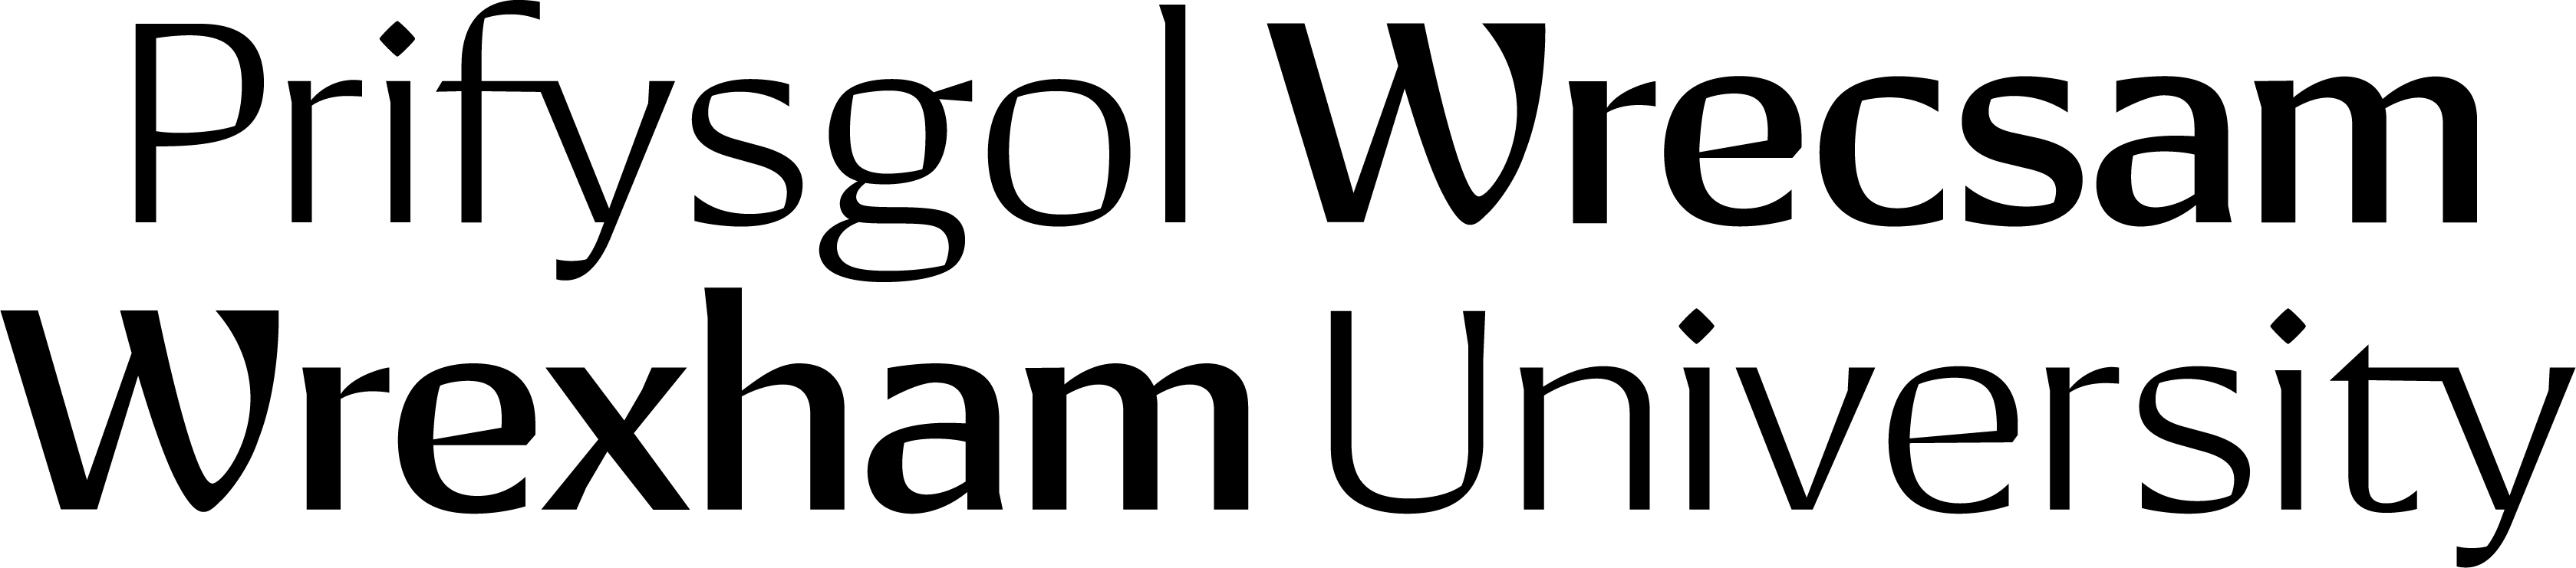 Wrexham-University